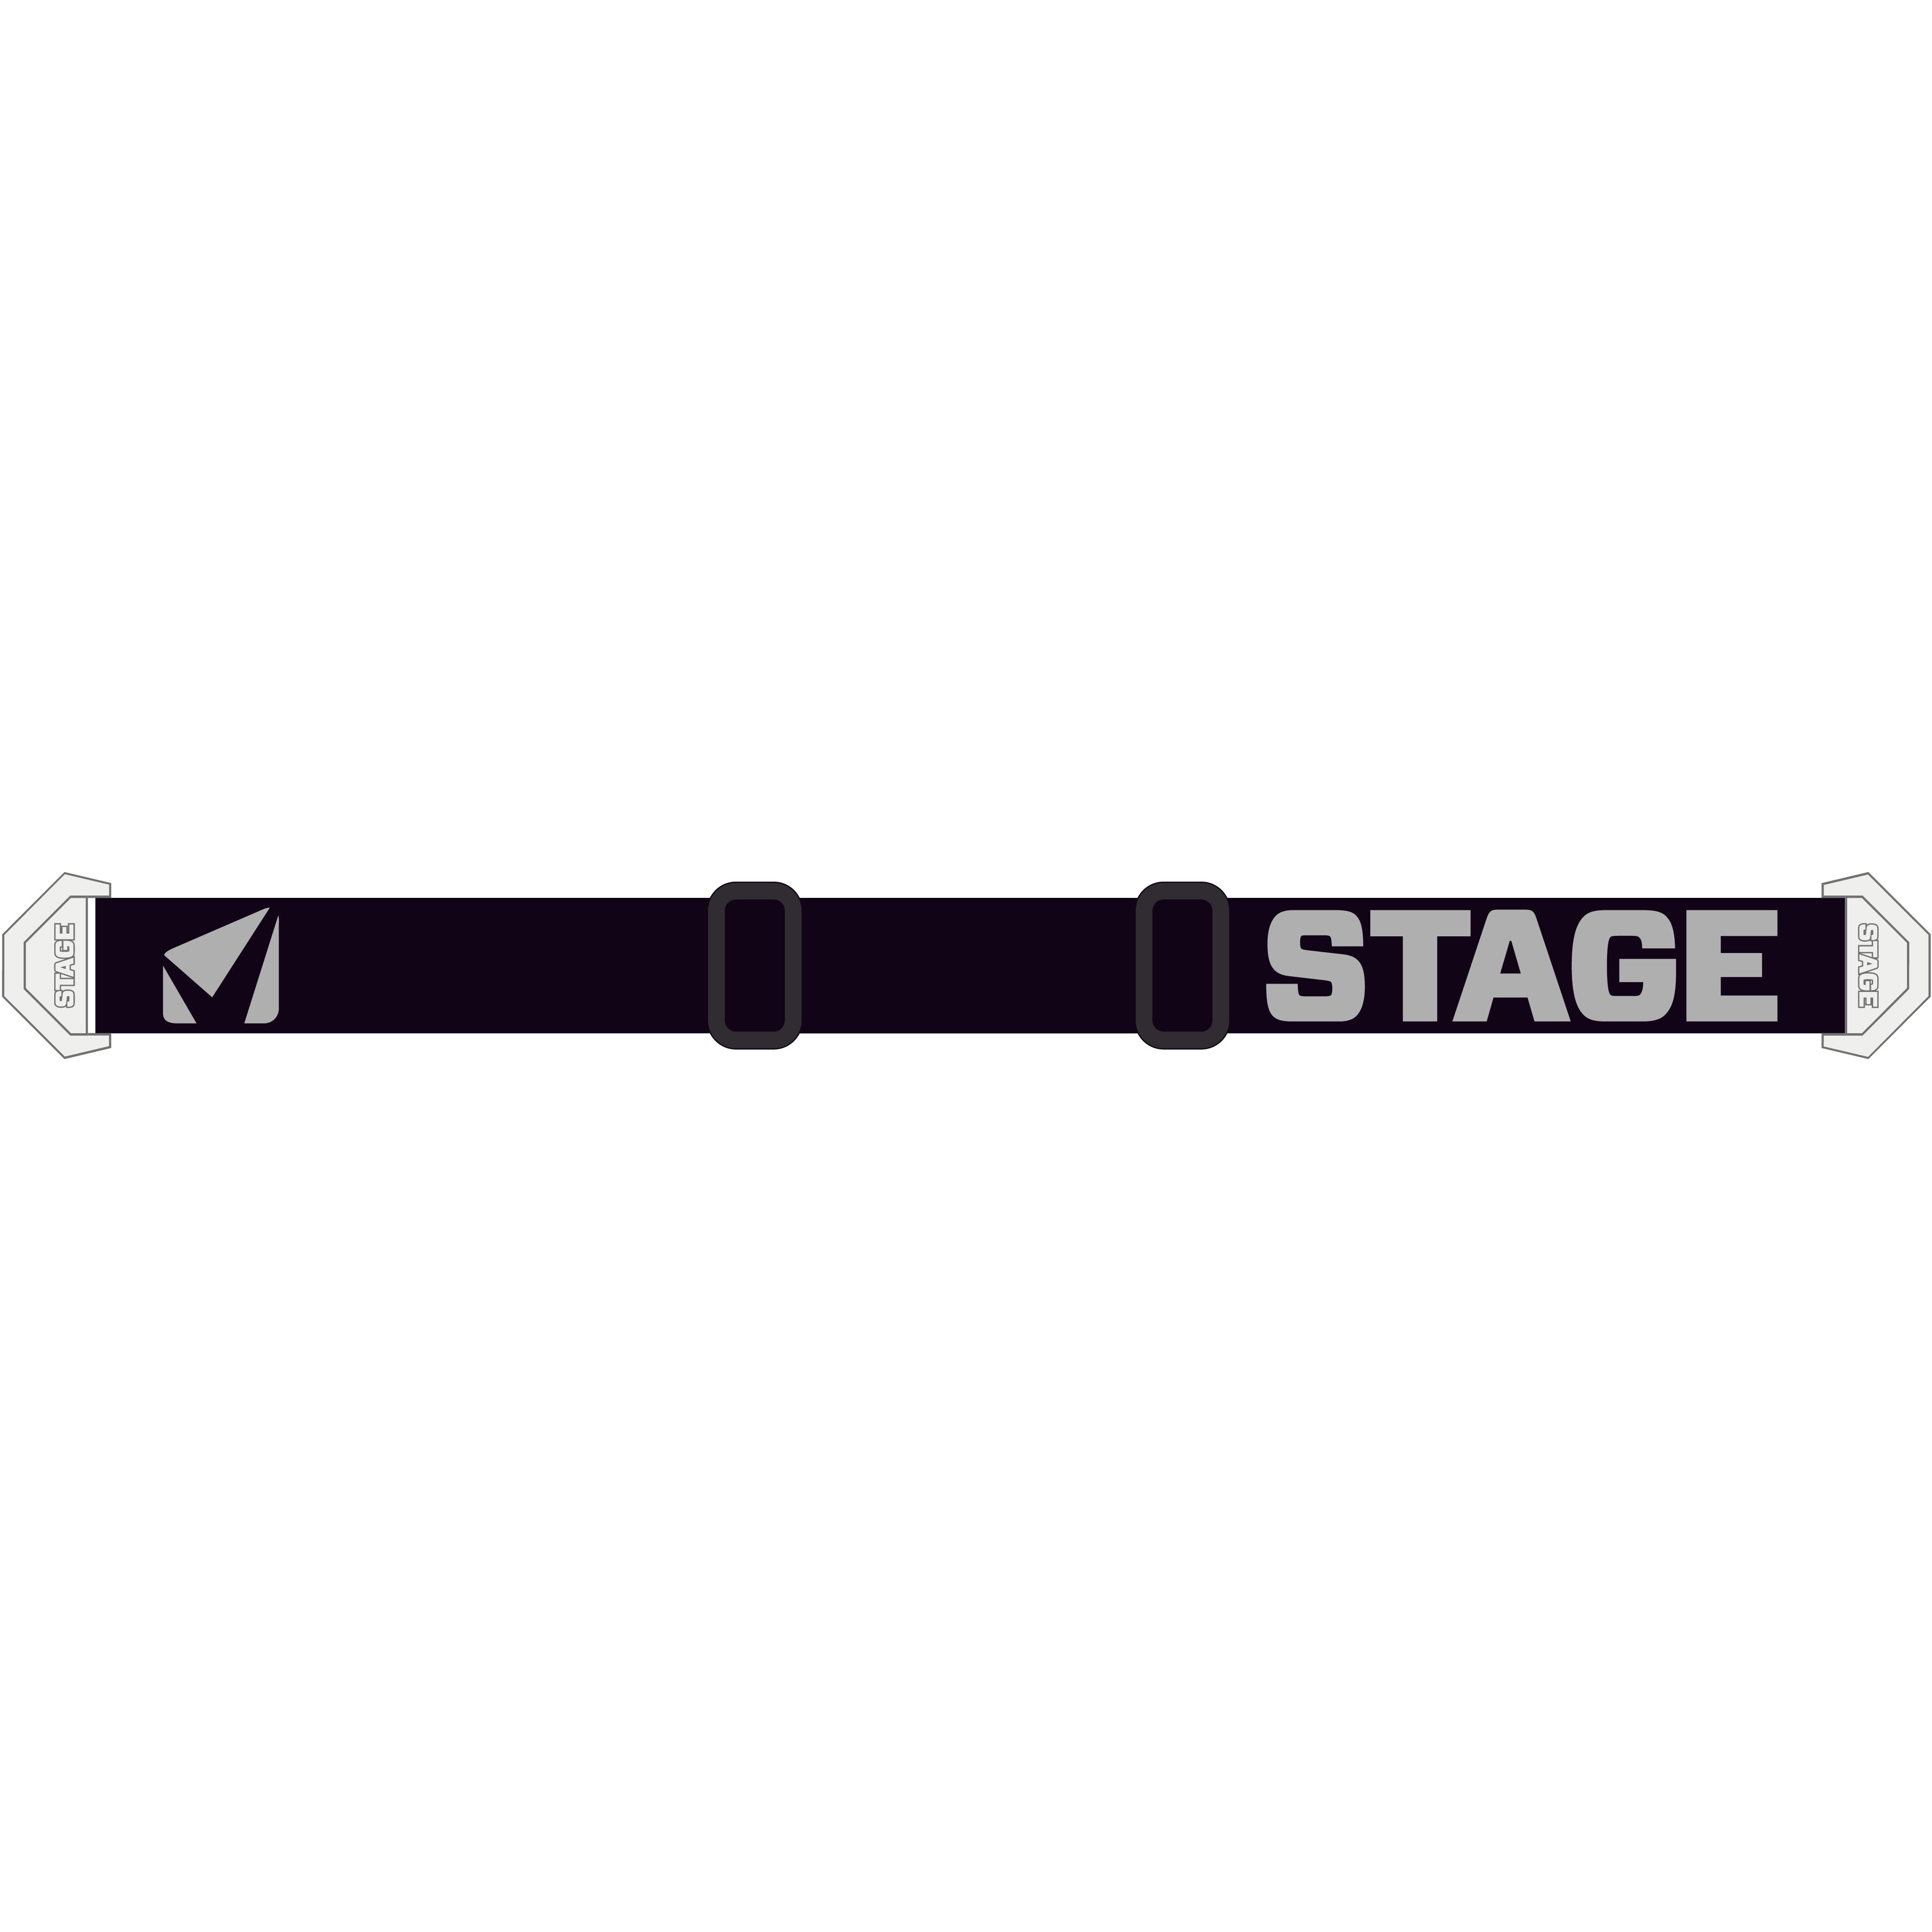 StageStuntStrap-Black_GreywithWhiteClip.jpg